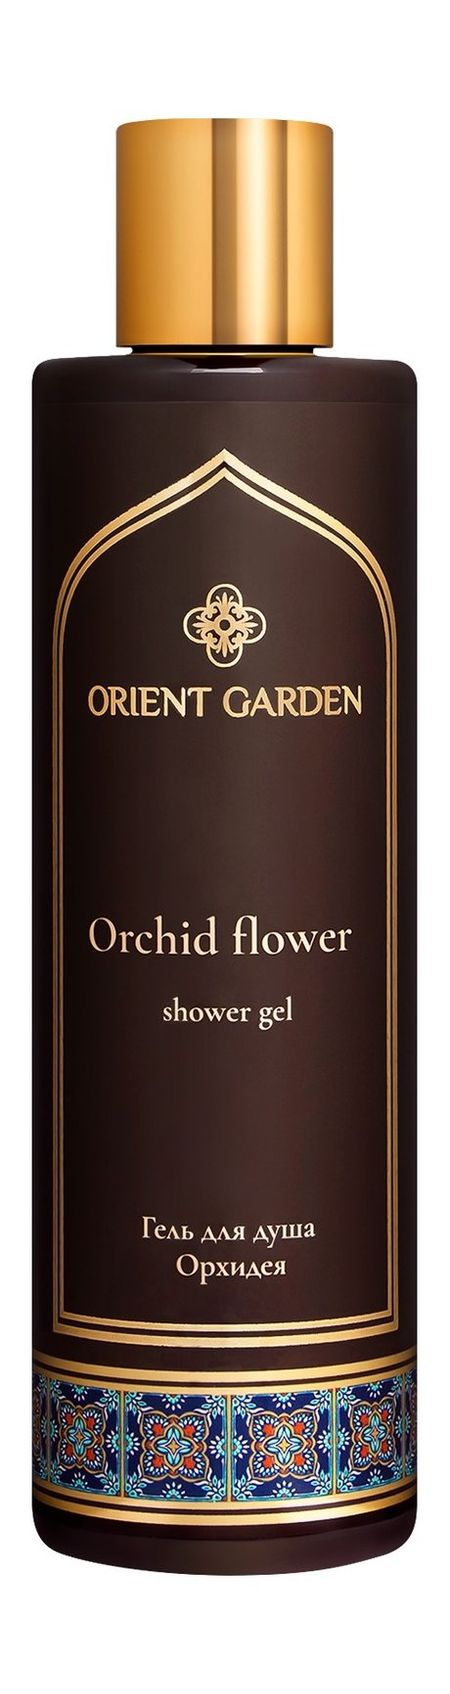 orient garden orhid flower shower gel